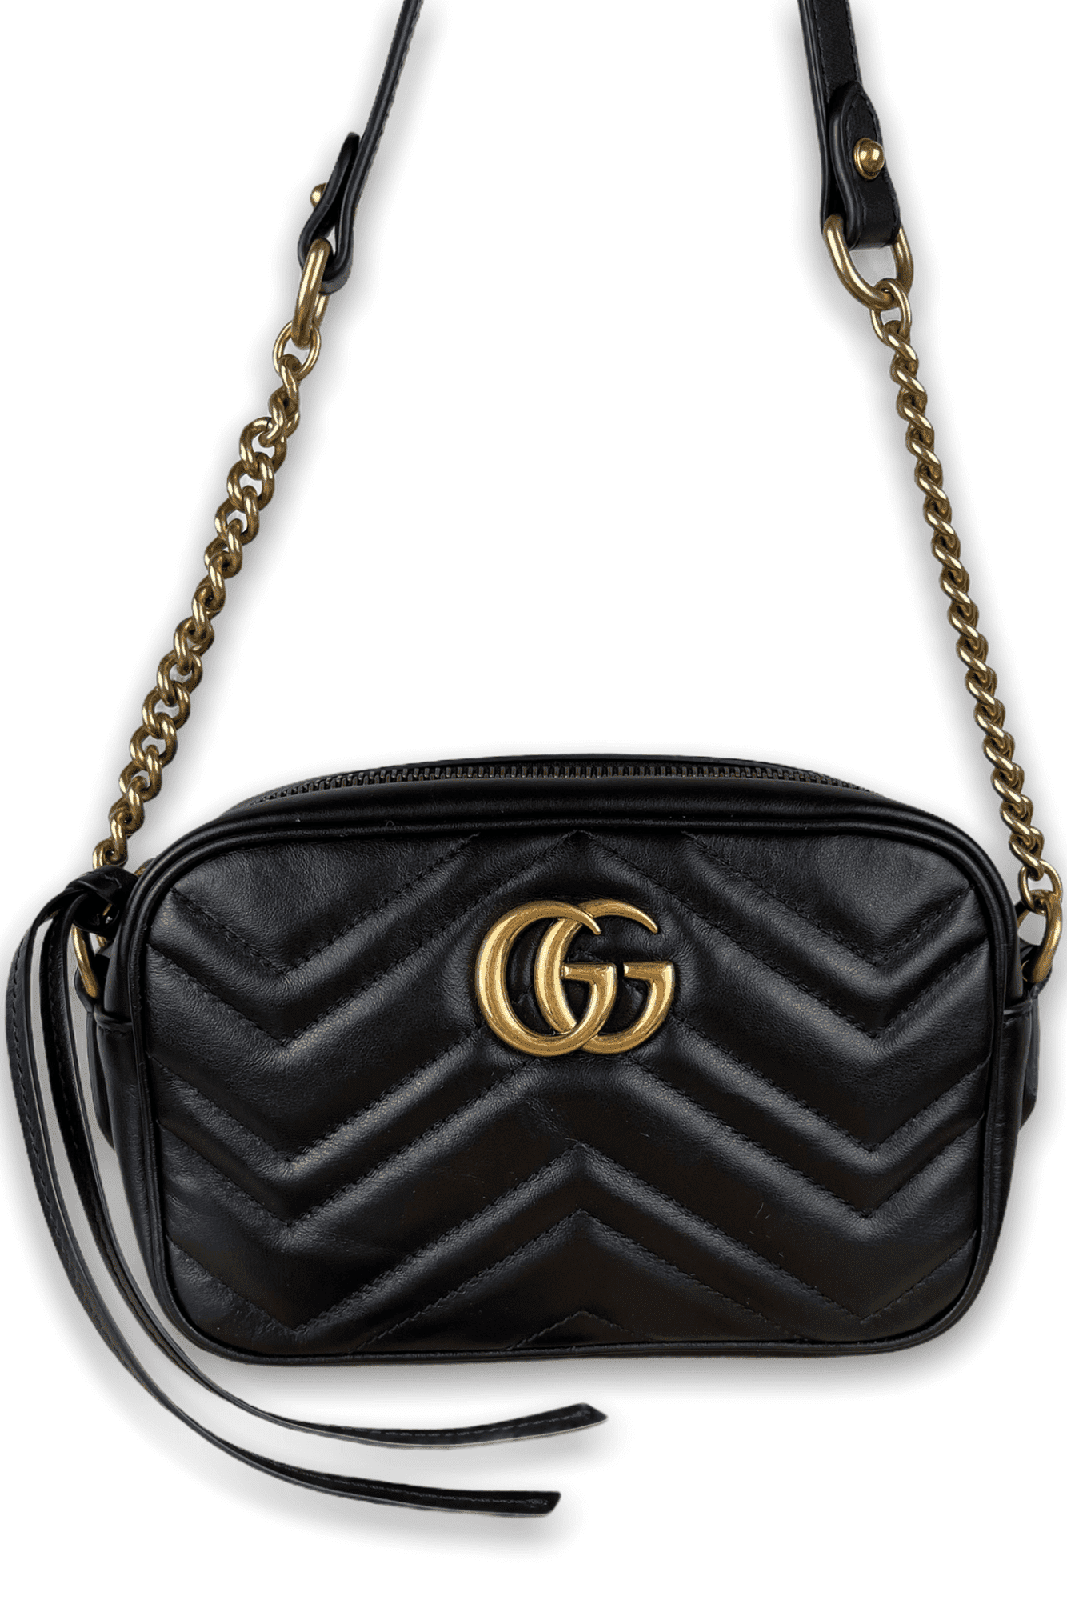 Louis Vuitton Alma BB and Gucci Marmont Camera Bag comparison 